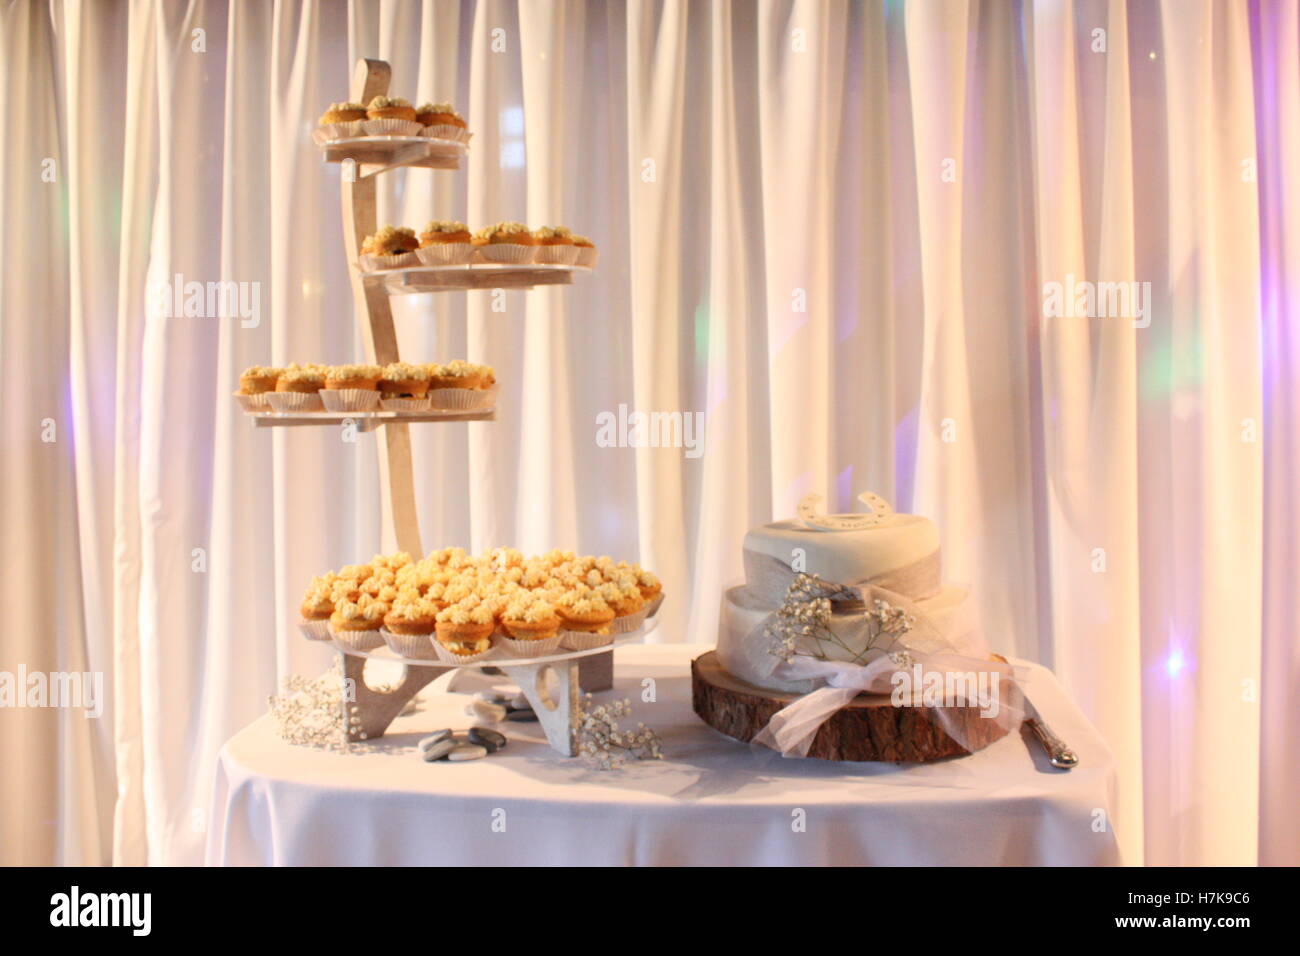 Hochzeitstorte mit Blumen und Band-Log-Stand - Stand der cupcakes Stockfoto